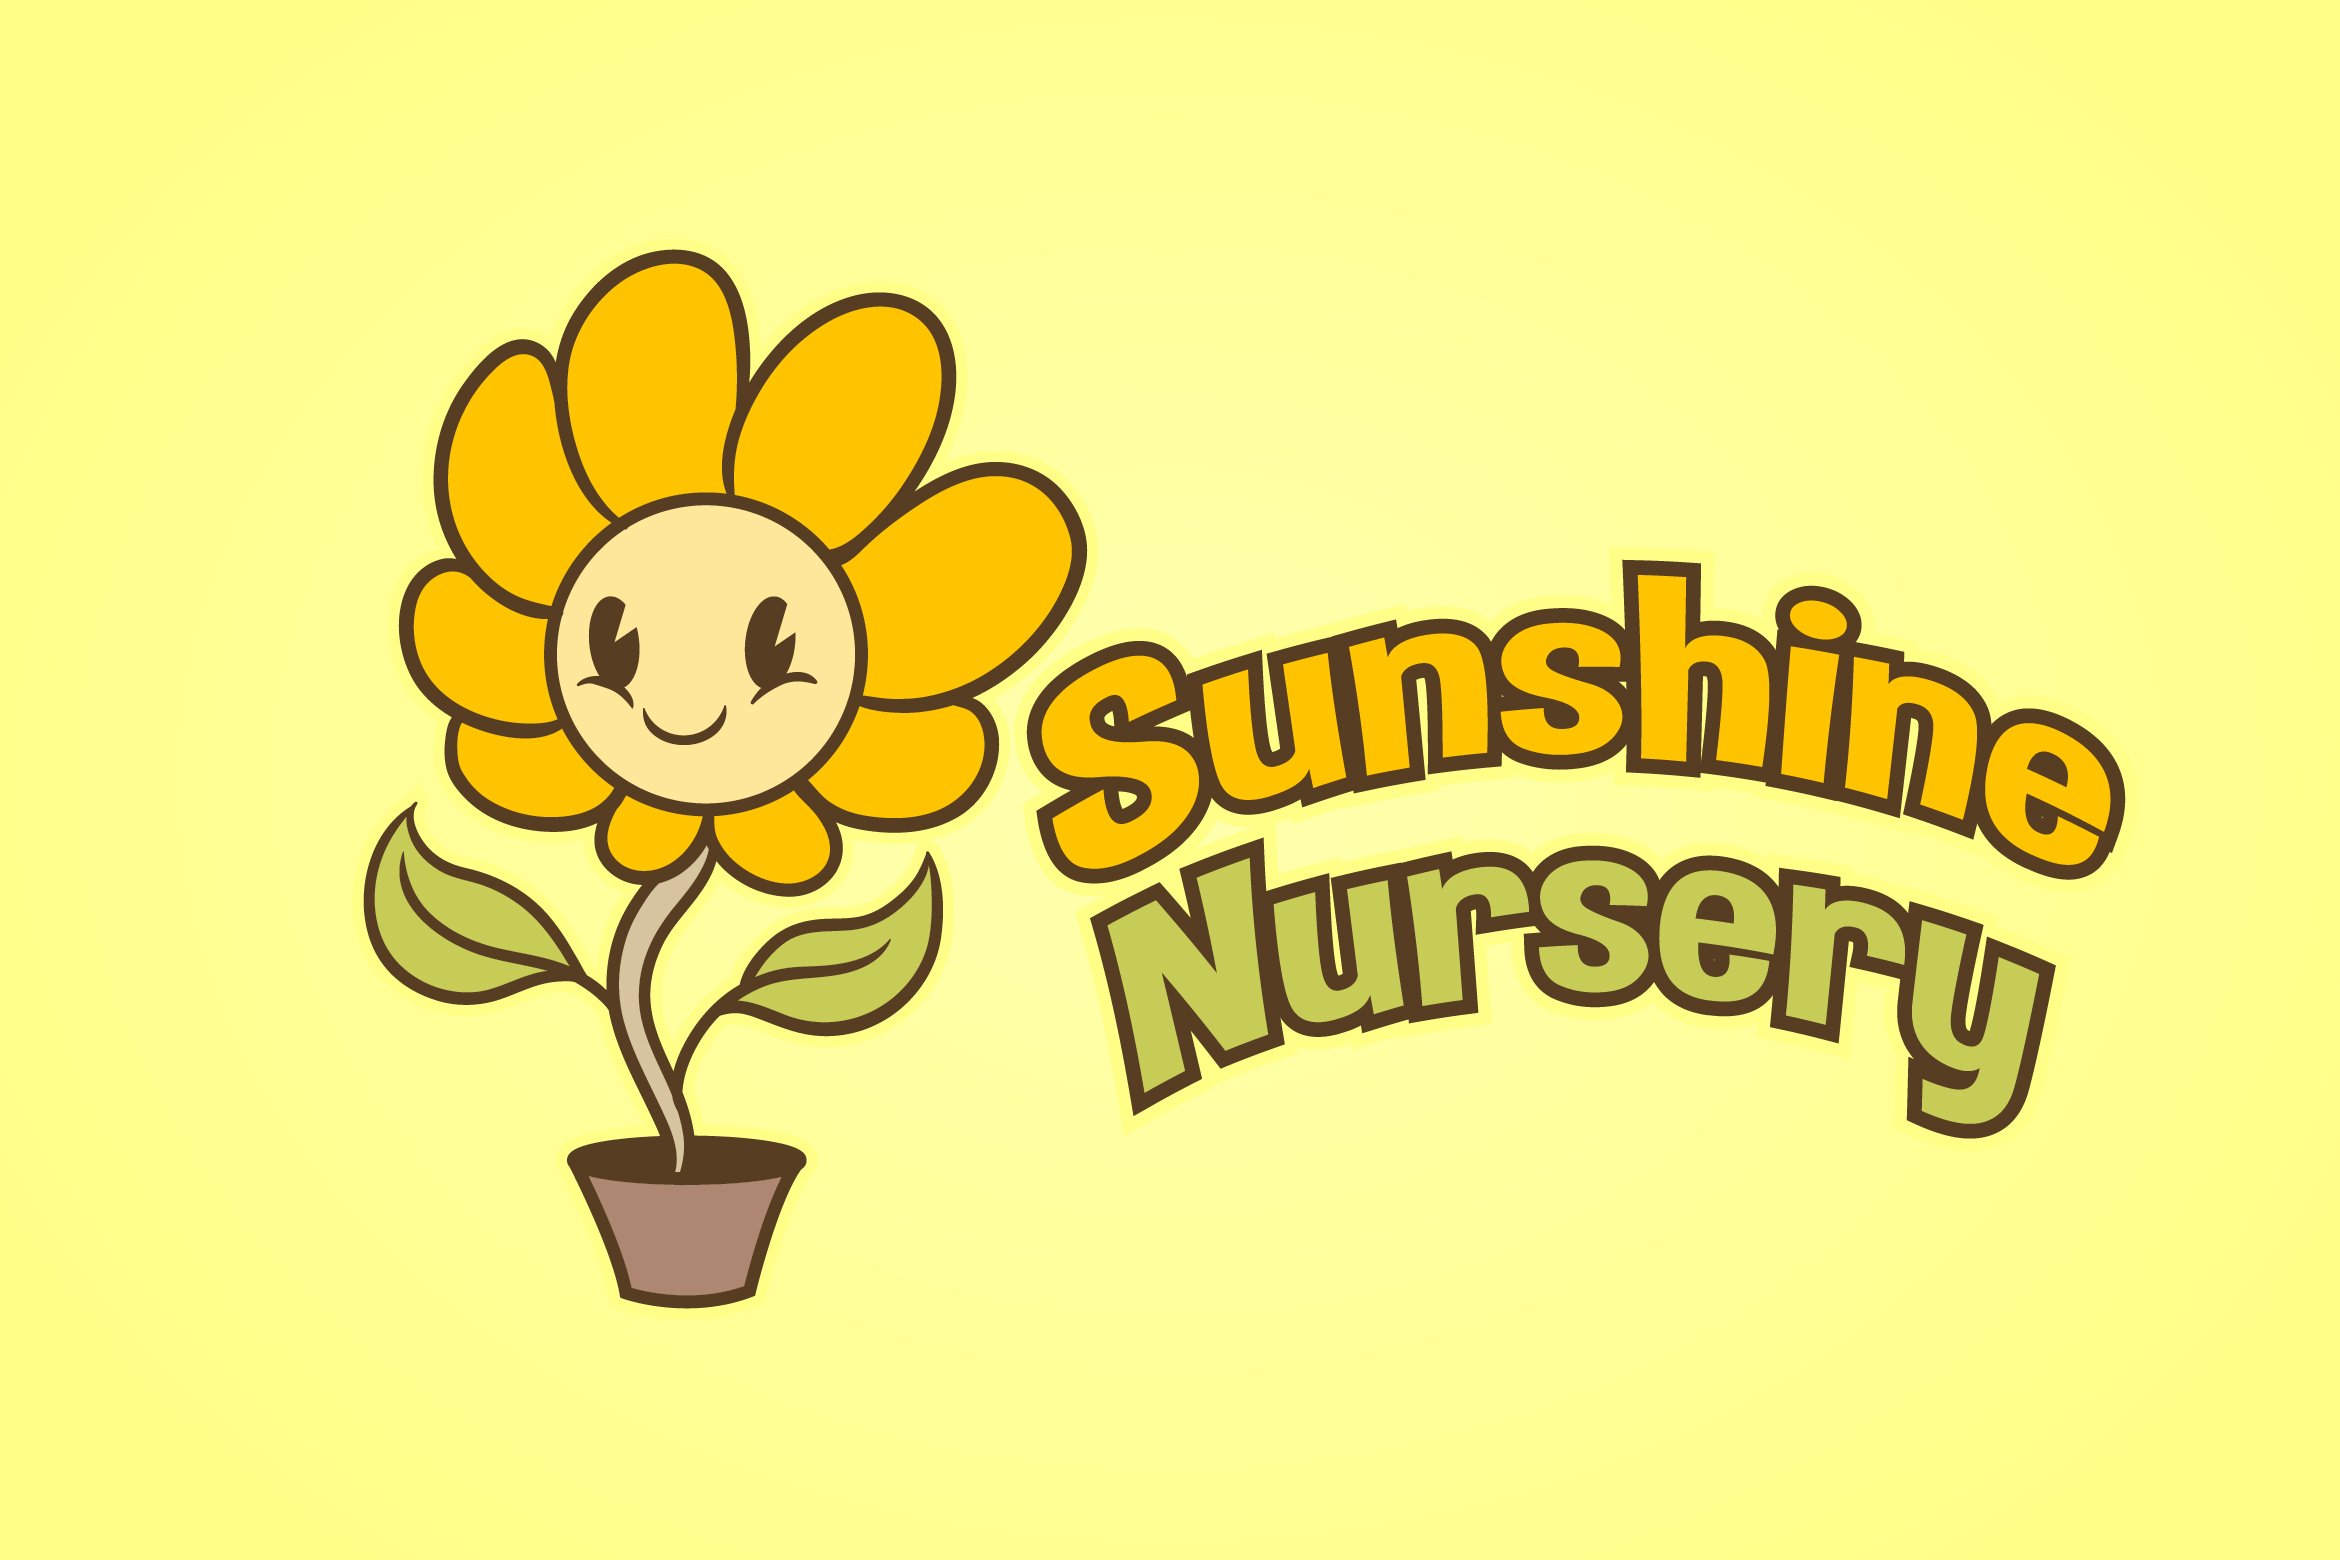 Sunflower Logo cover image.